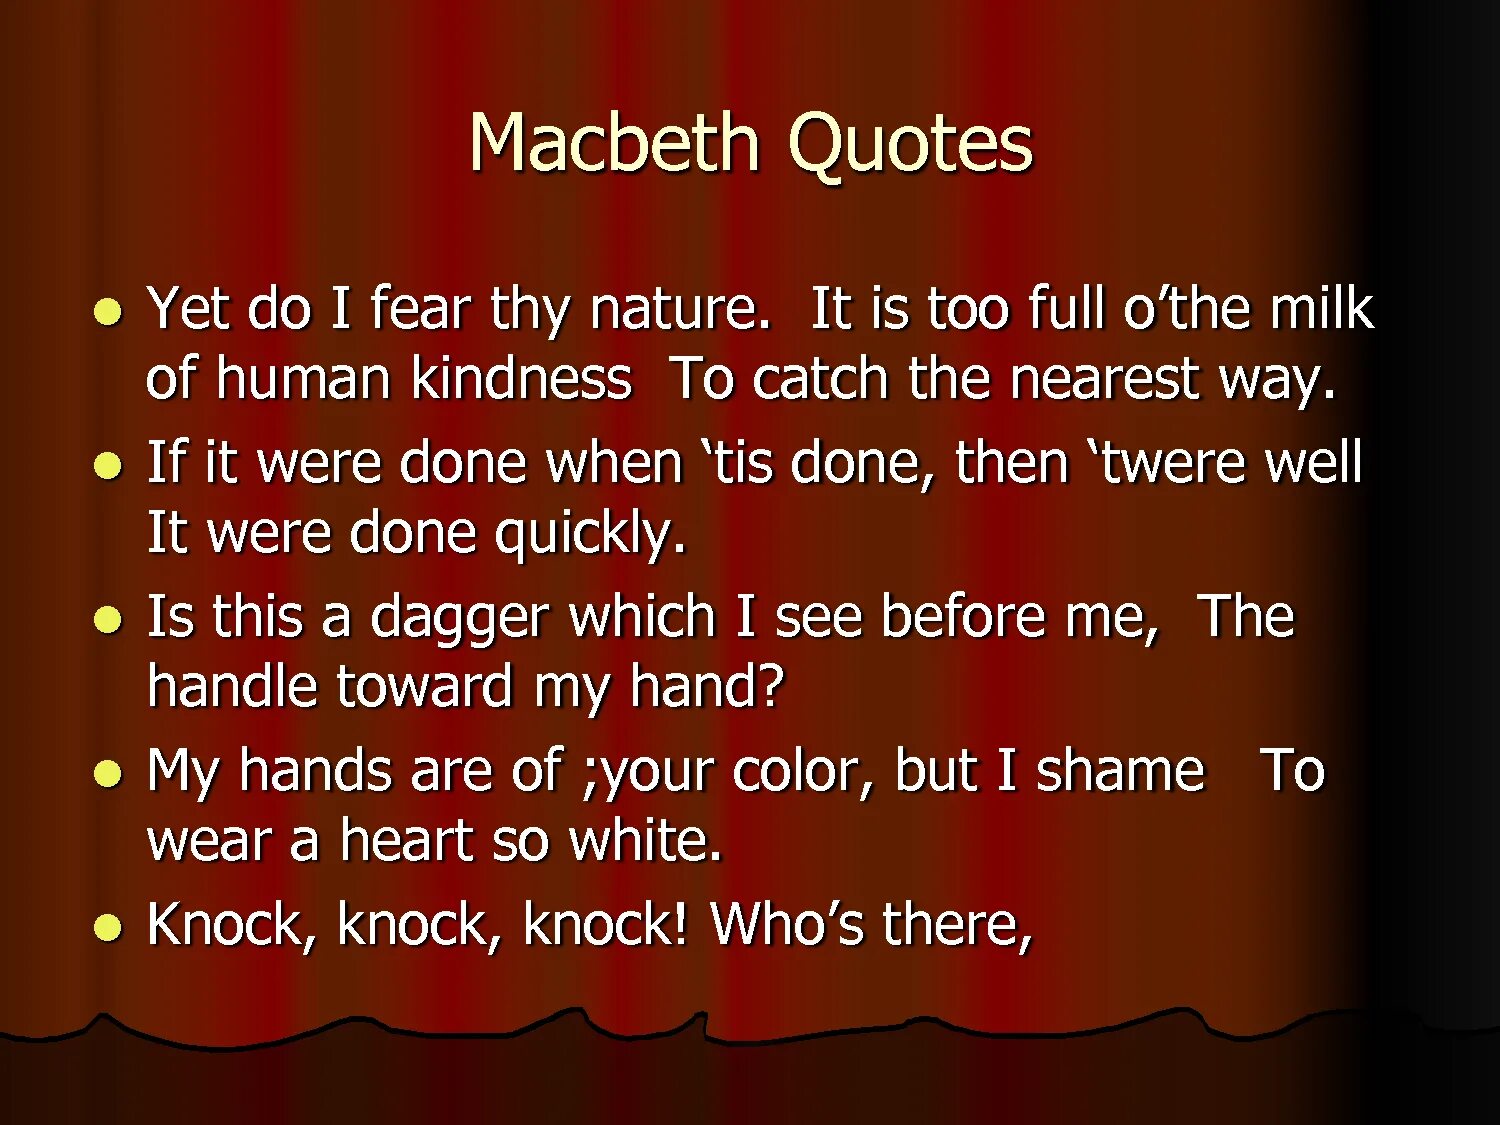 Шекспир у. "Макбет". Макбет Шекспир цитаты. Макбет цитаты. Shakespeare "Macbeth".